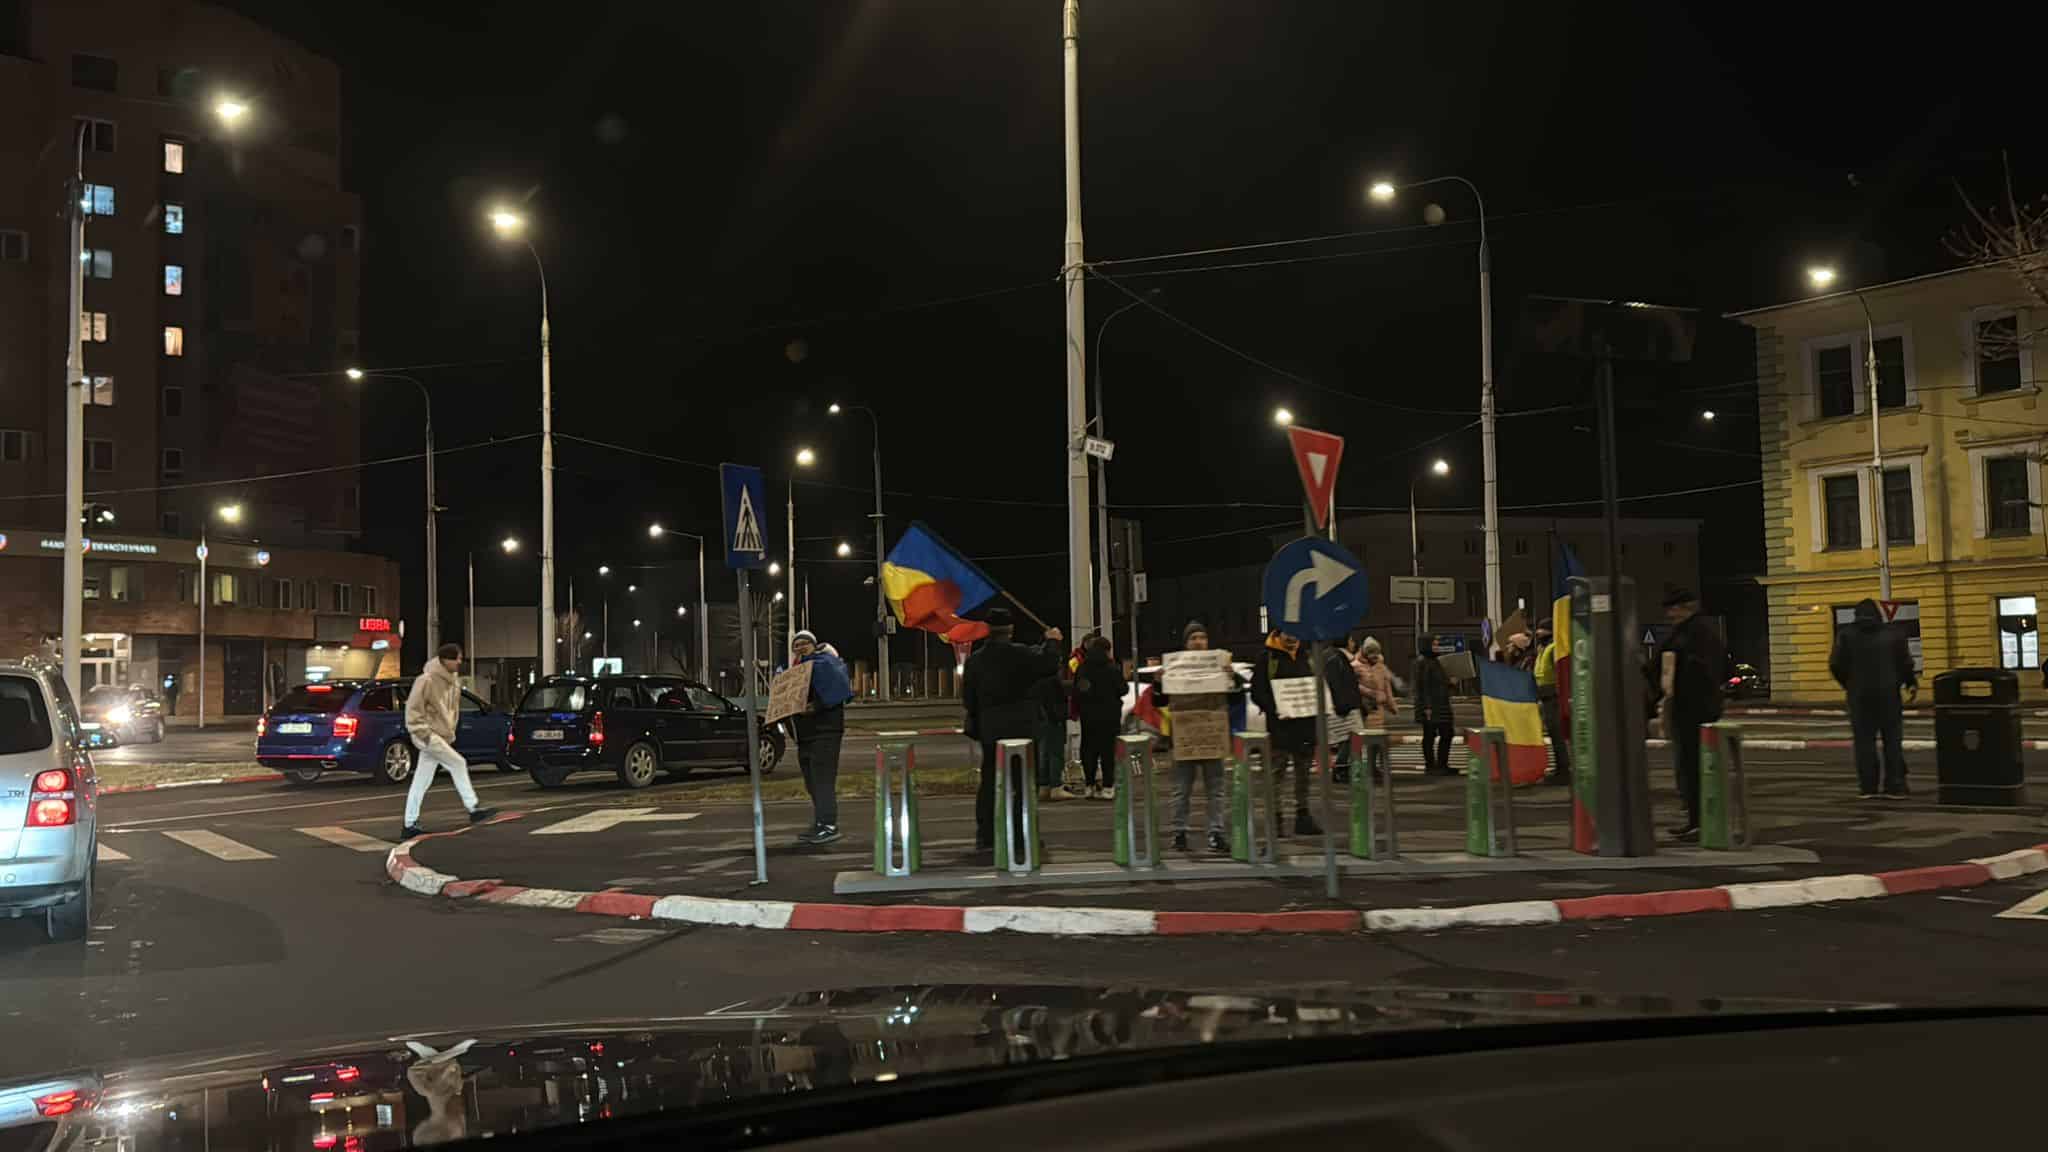 protestul împotriva măsurilor fiscale nu a avut succes la sibiu. aproximativ 20 oameni au ieșit în stradă, vineri seară (foto)